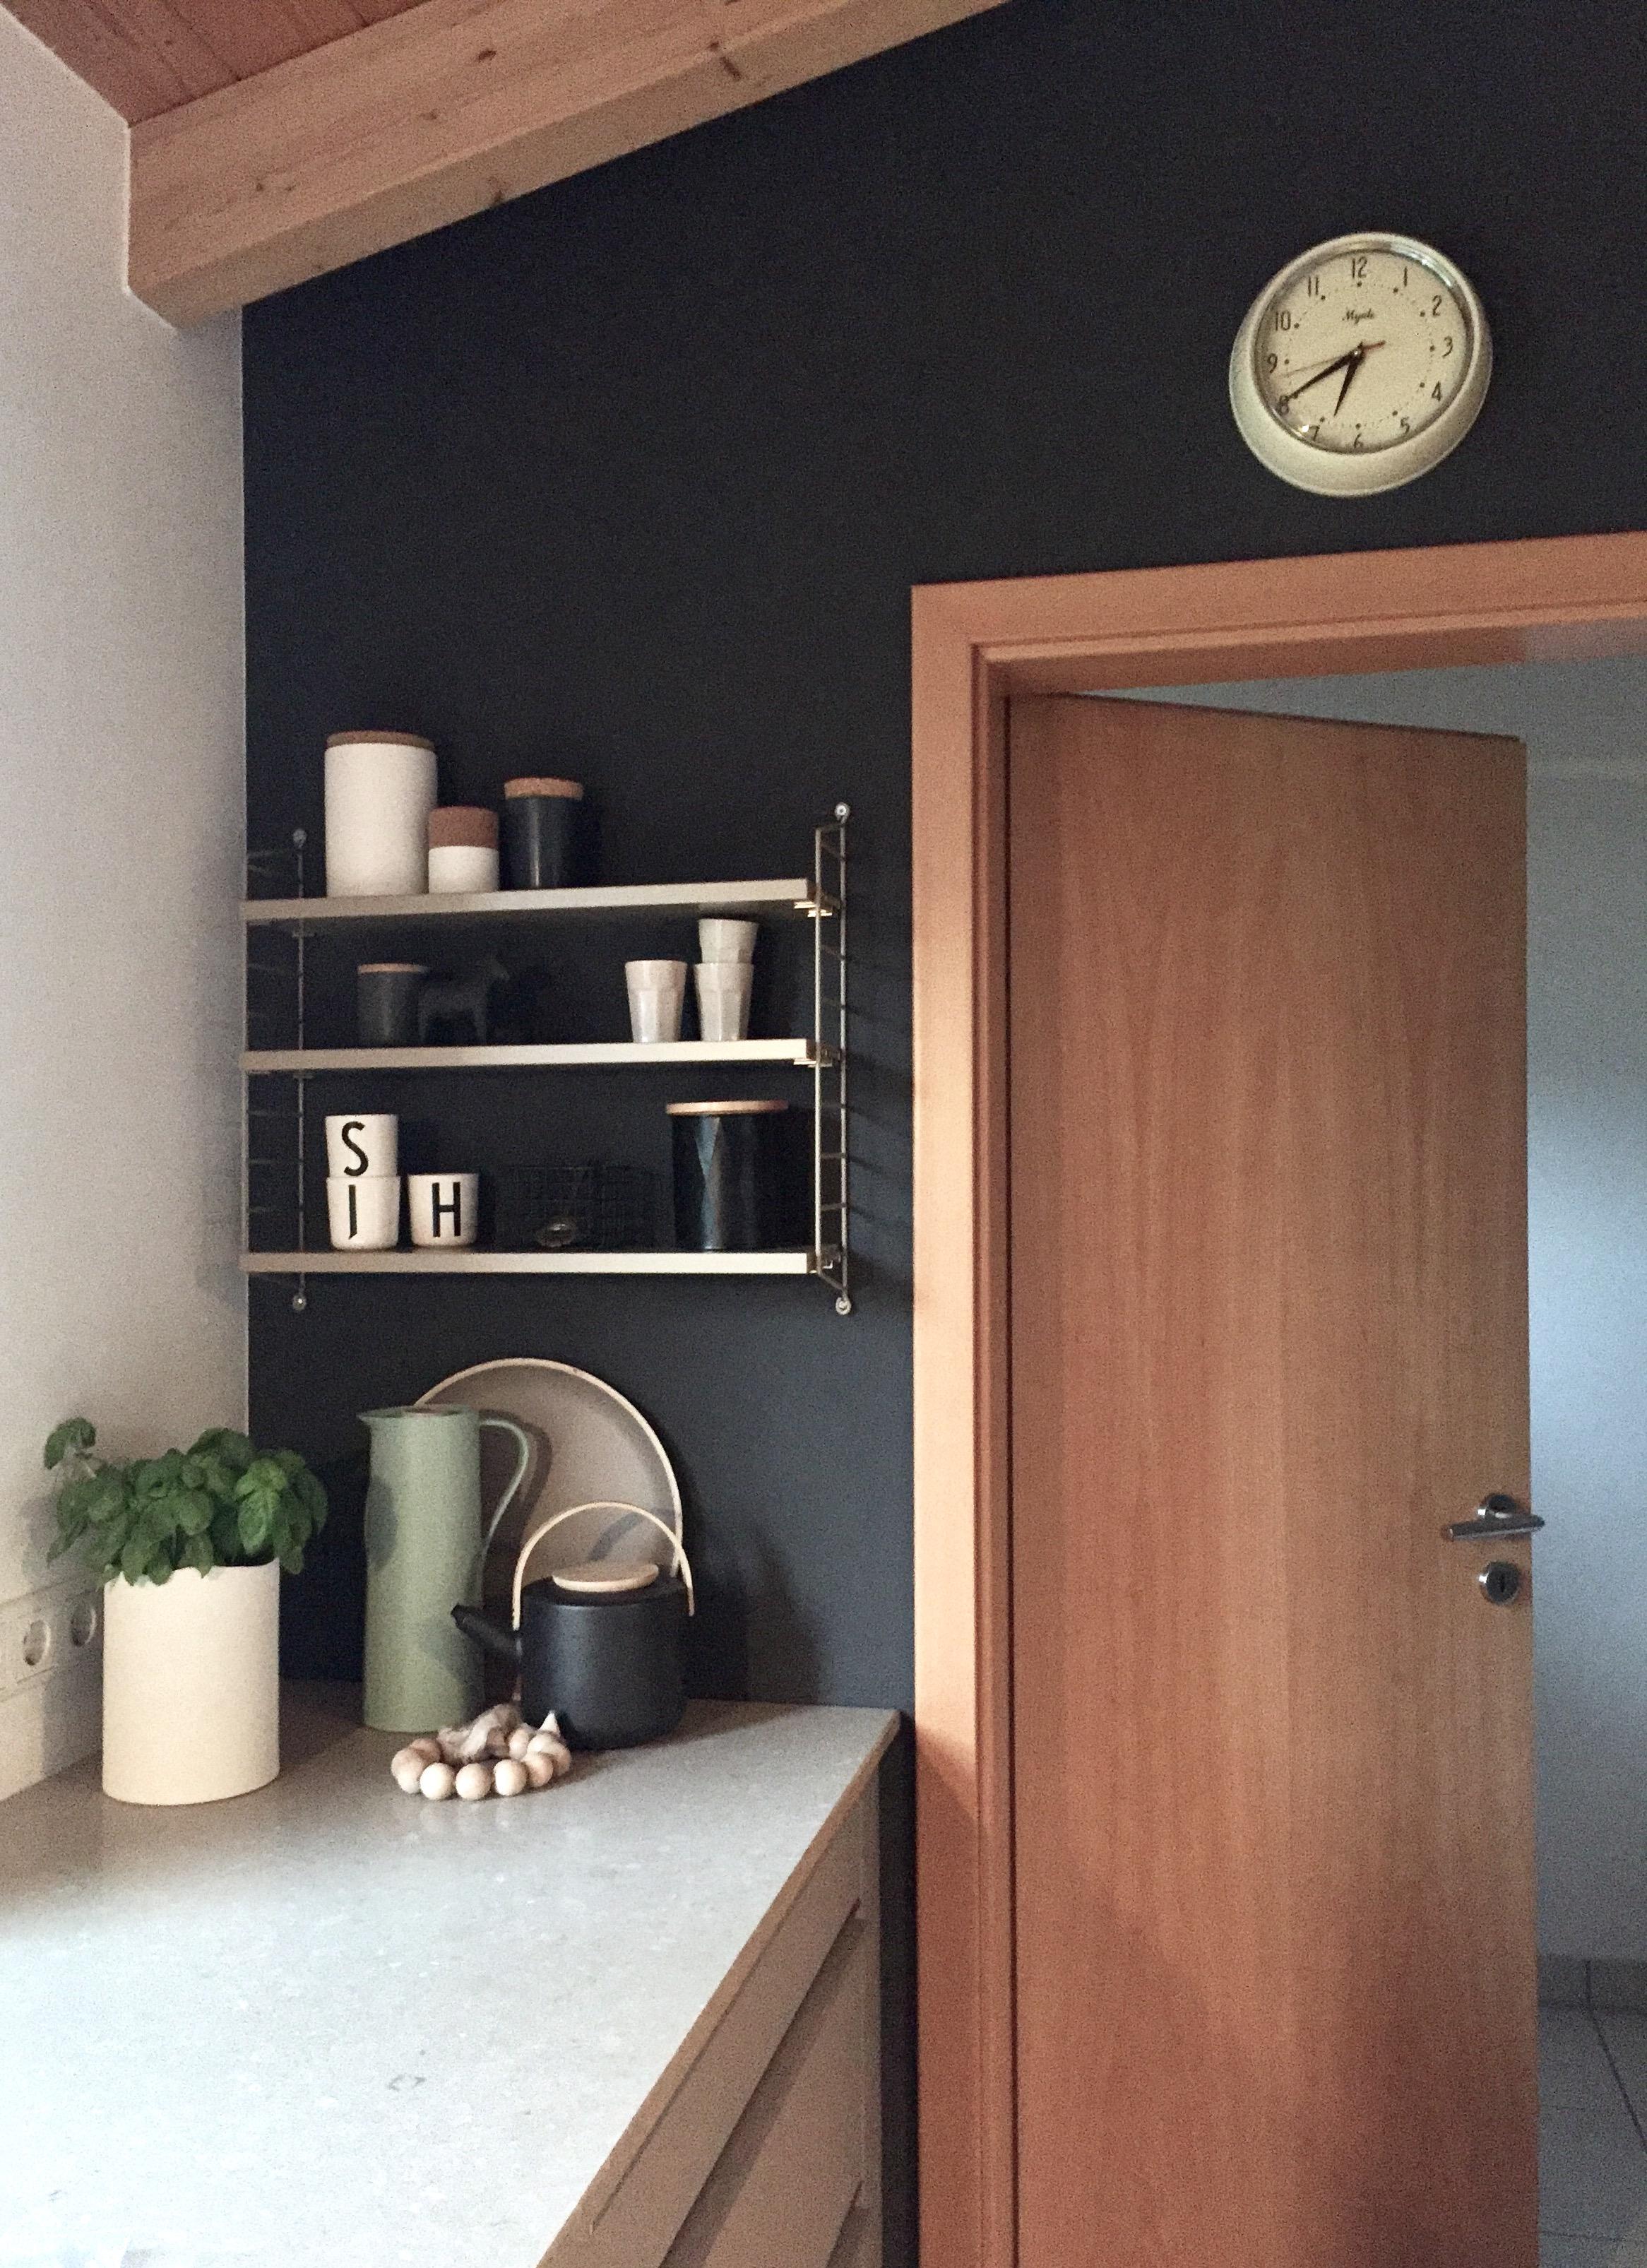 KitchenShelf
#interior #living #küche #regal #shelf #stringpocket #schwarz #weiß #holzhaus